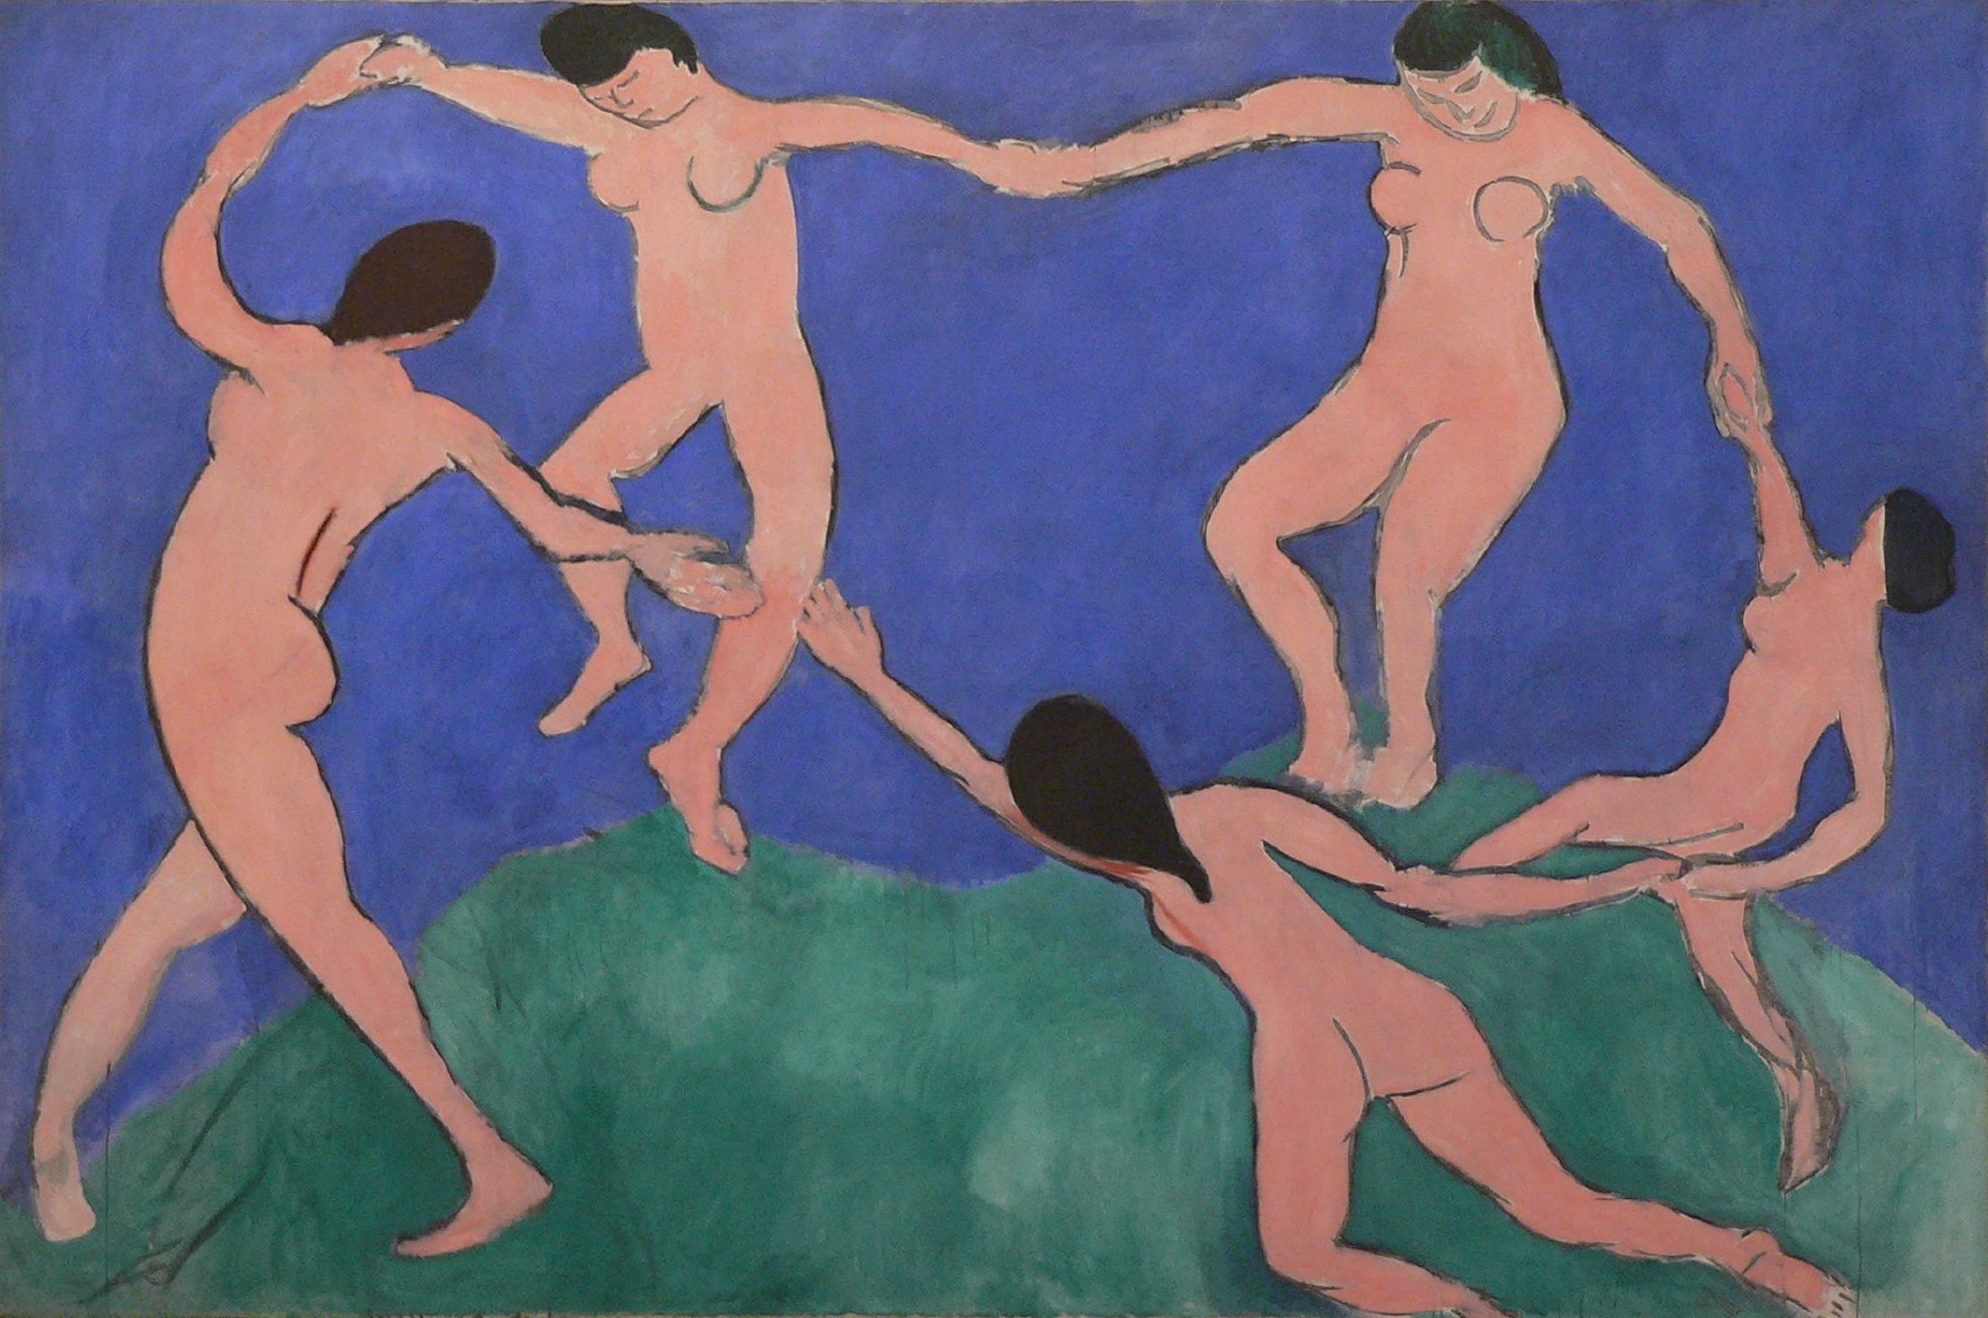 https://upload.wikimedia.org/wikipedia/en/2/2e/La_danse_%28I%29_by_Matisse.jpg